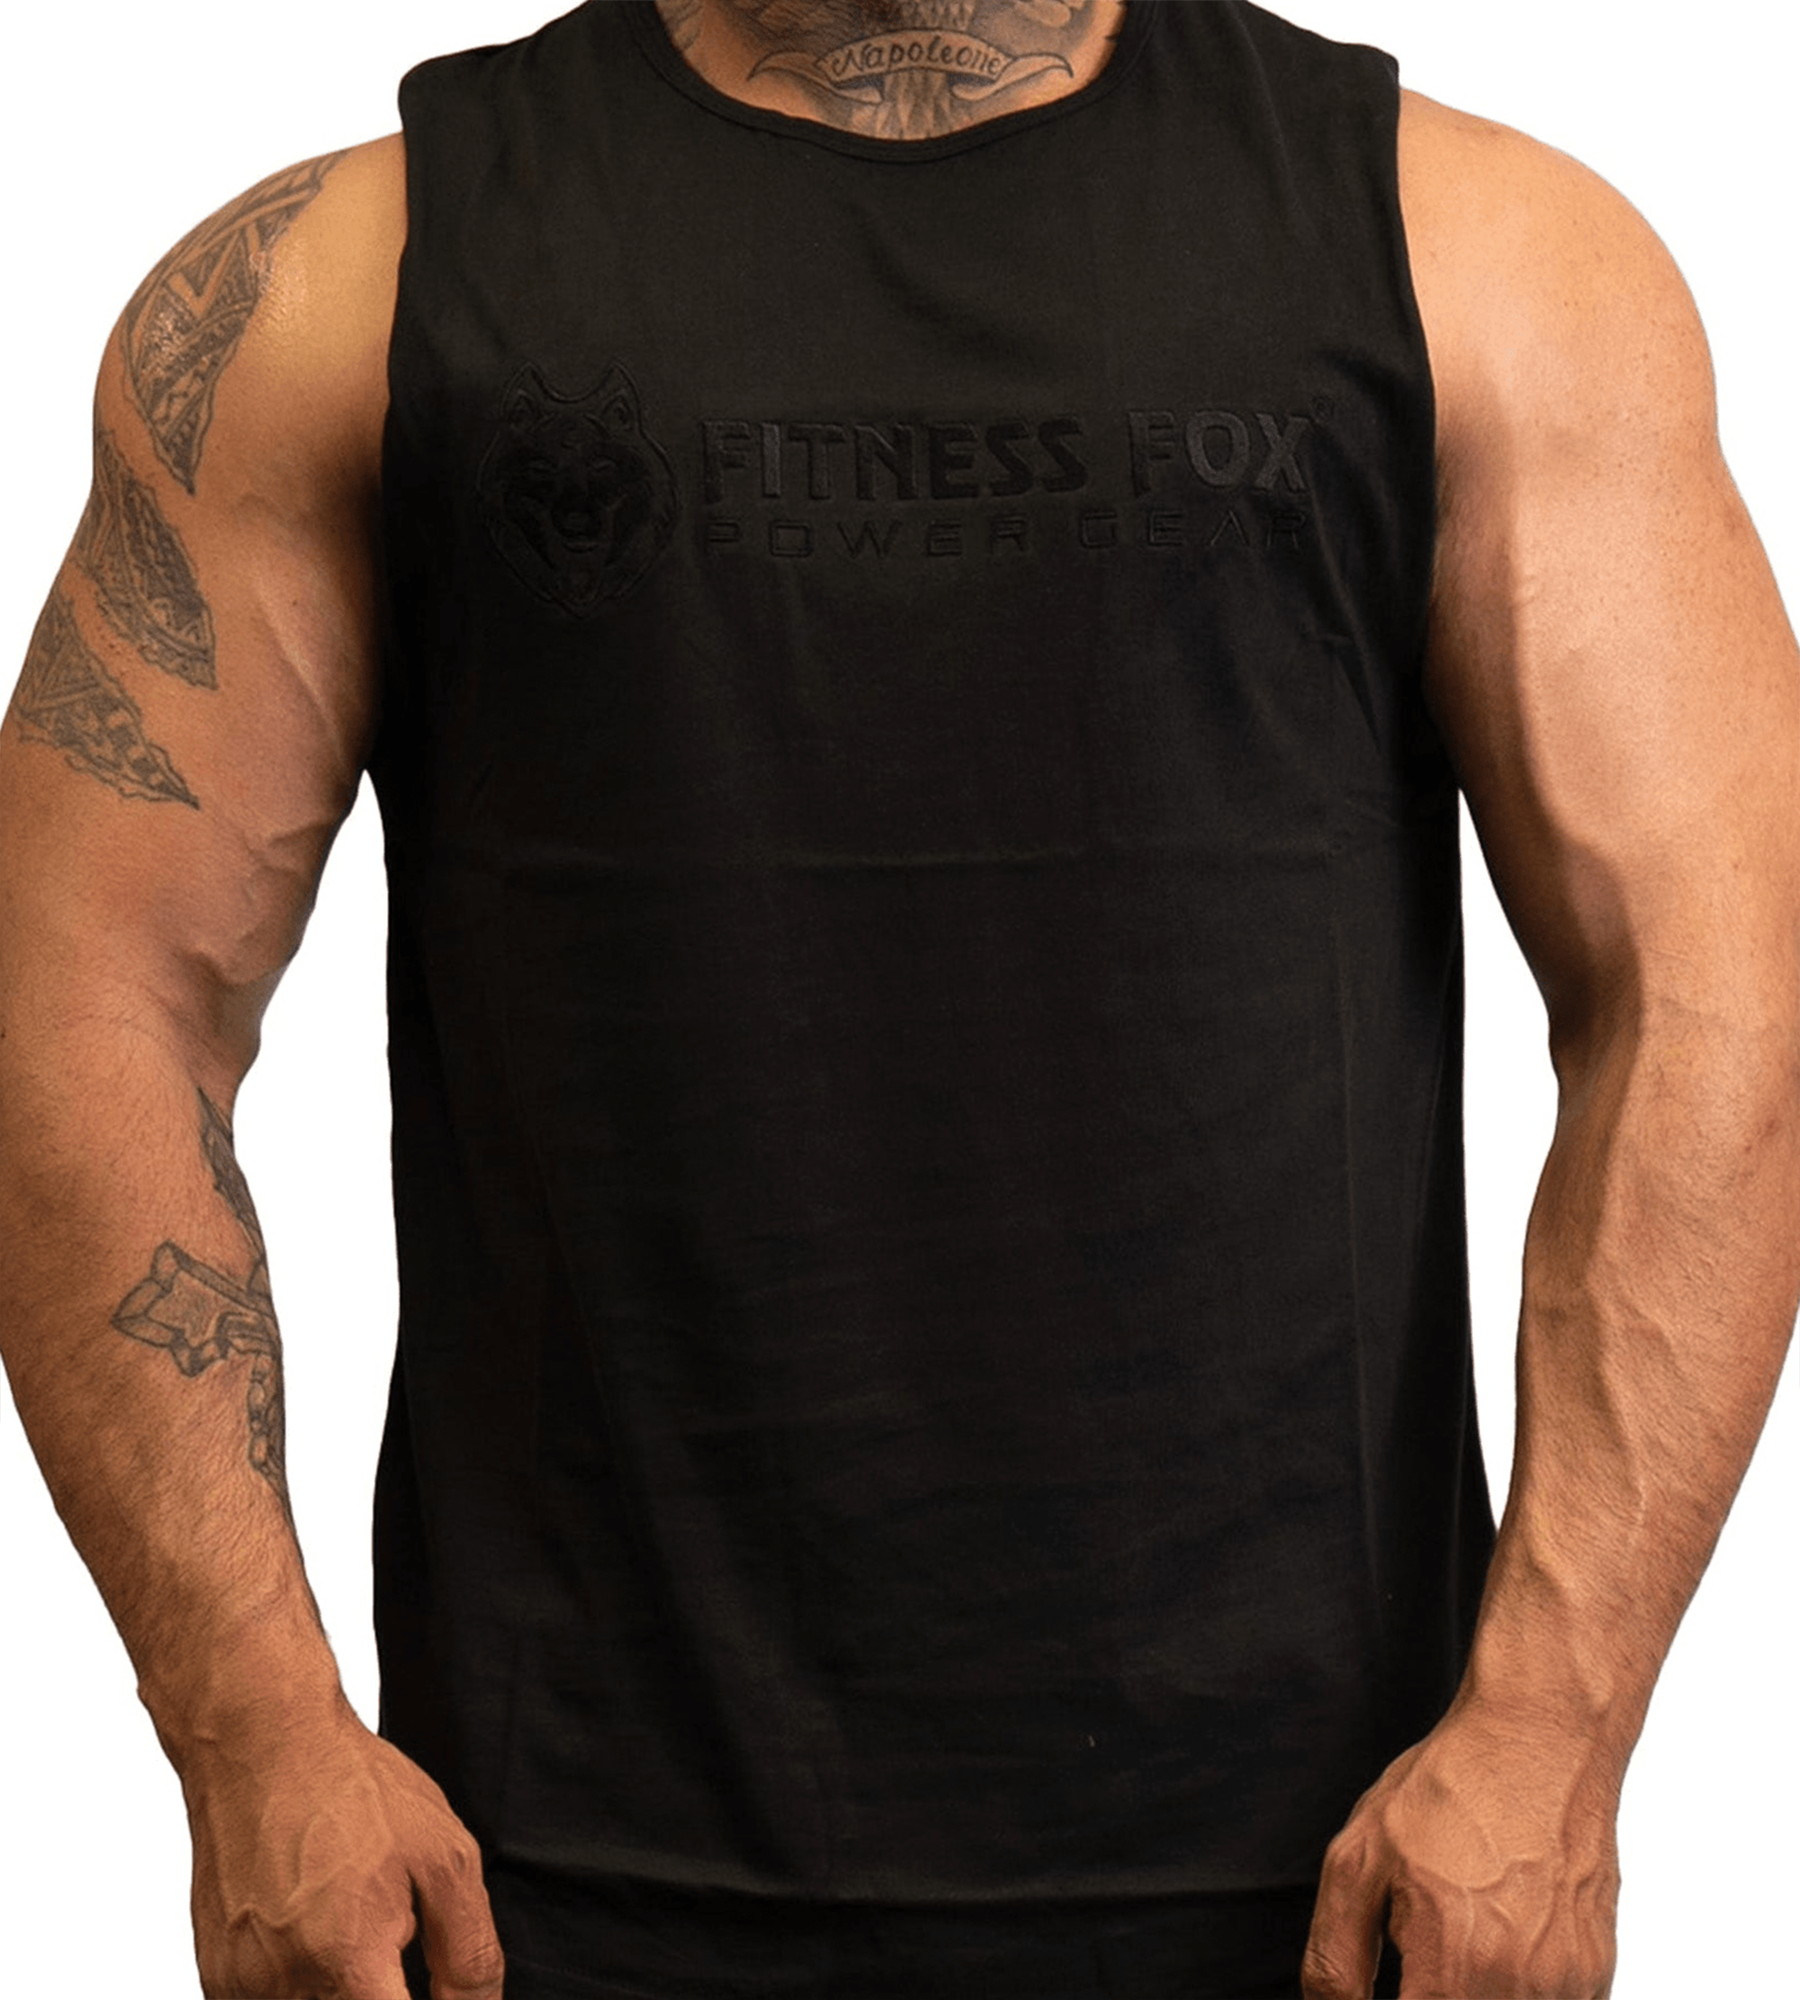 FitnessFox Black Muscle Tank